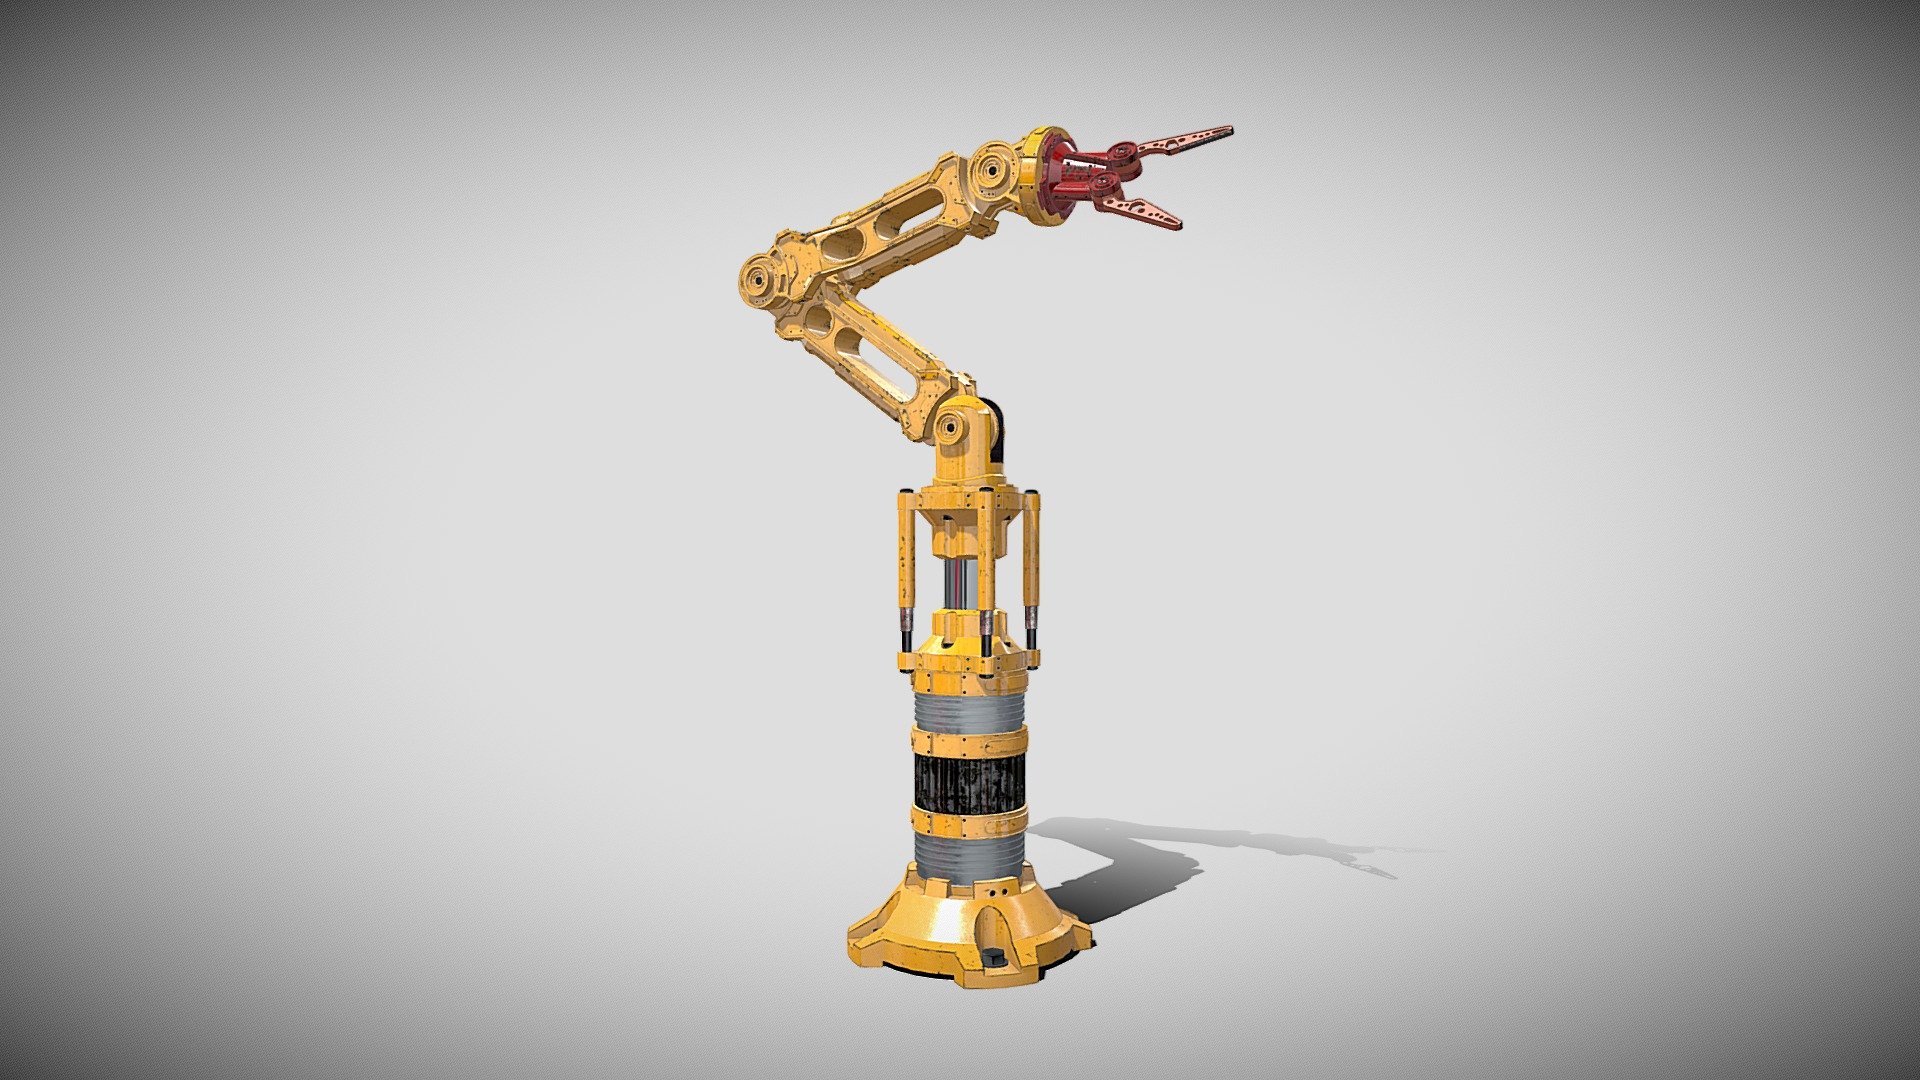 3d model of the robotic arm - Robotic Arm - 3D model by djkorg 3d model